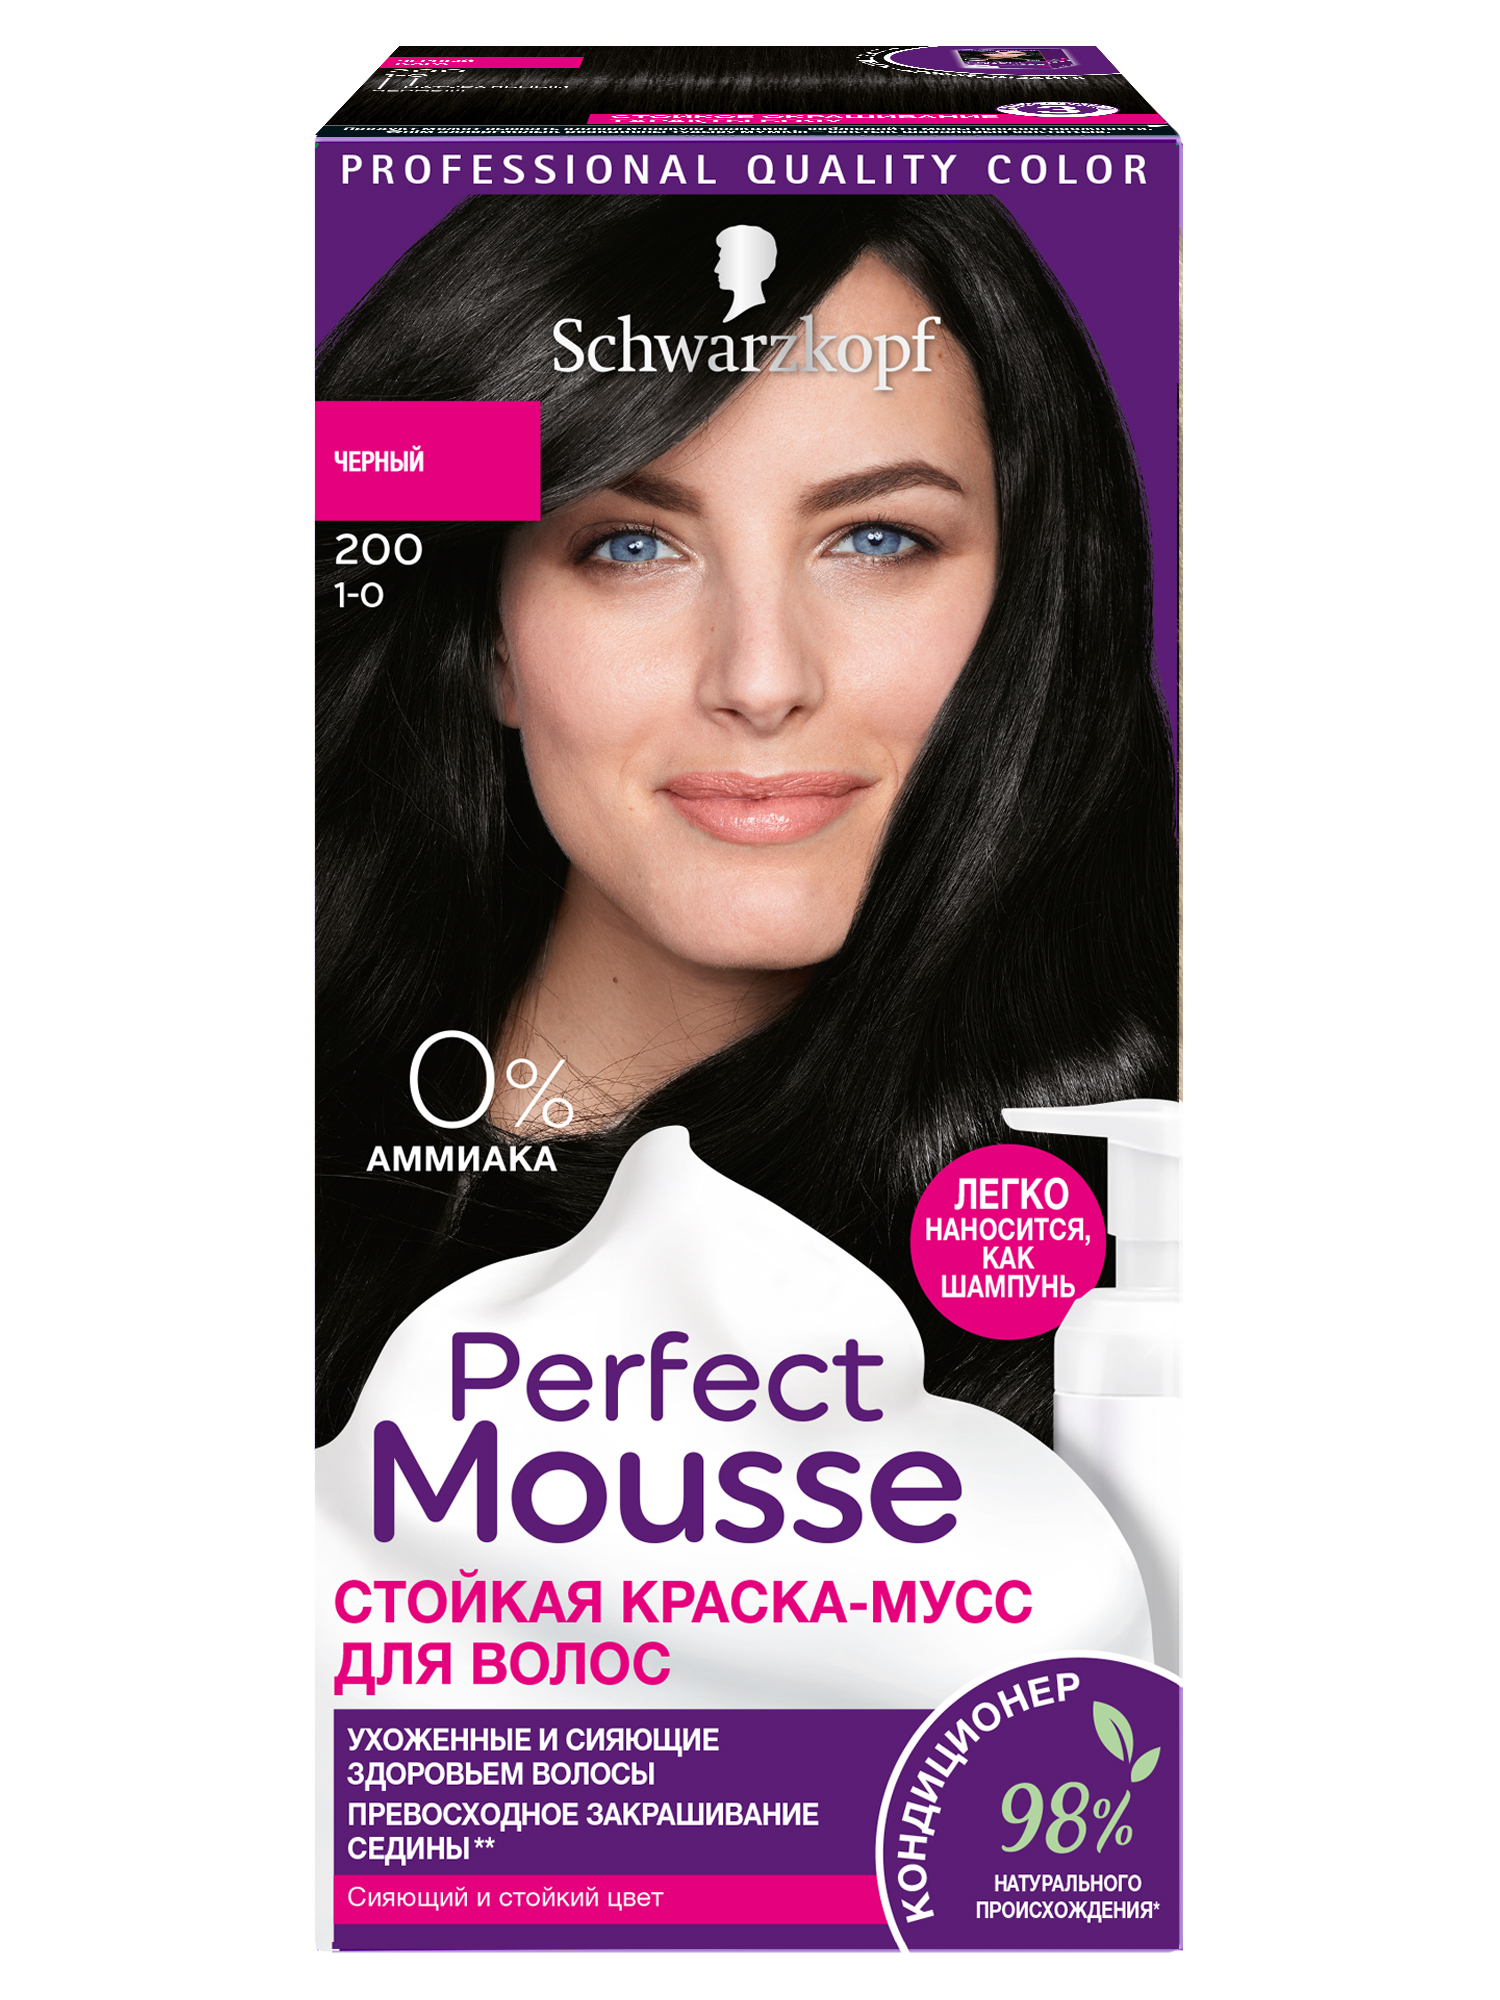 Купить Стойкая краска-Мусс Schwarzkopf Perfect Mousse для укладки волос, 200 92, 5 мл